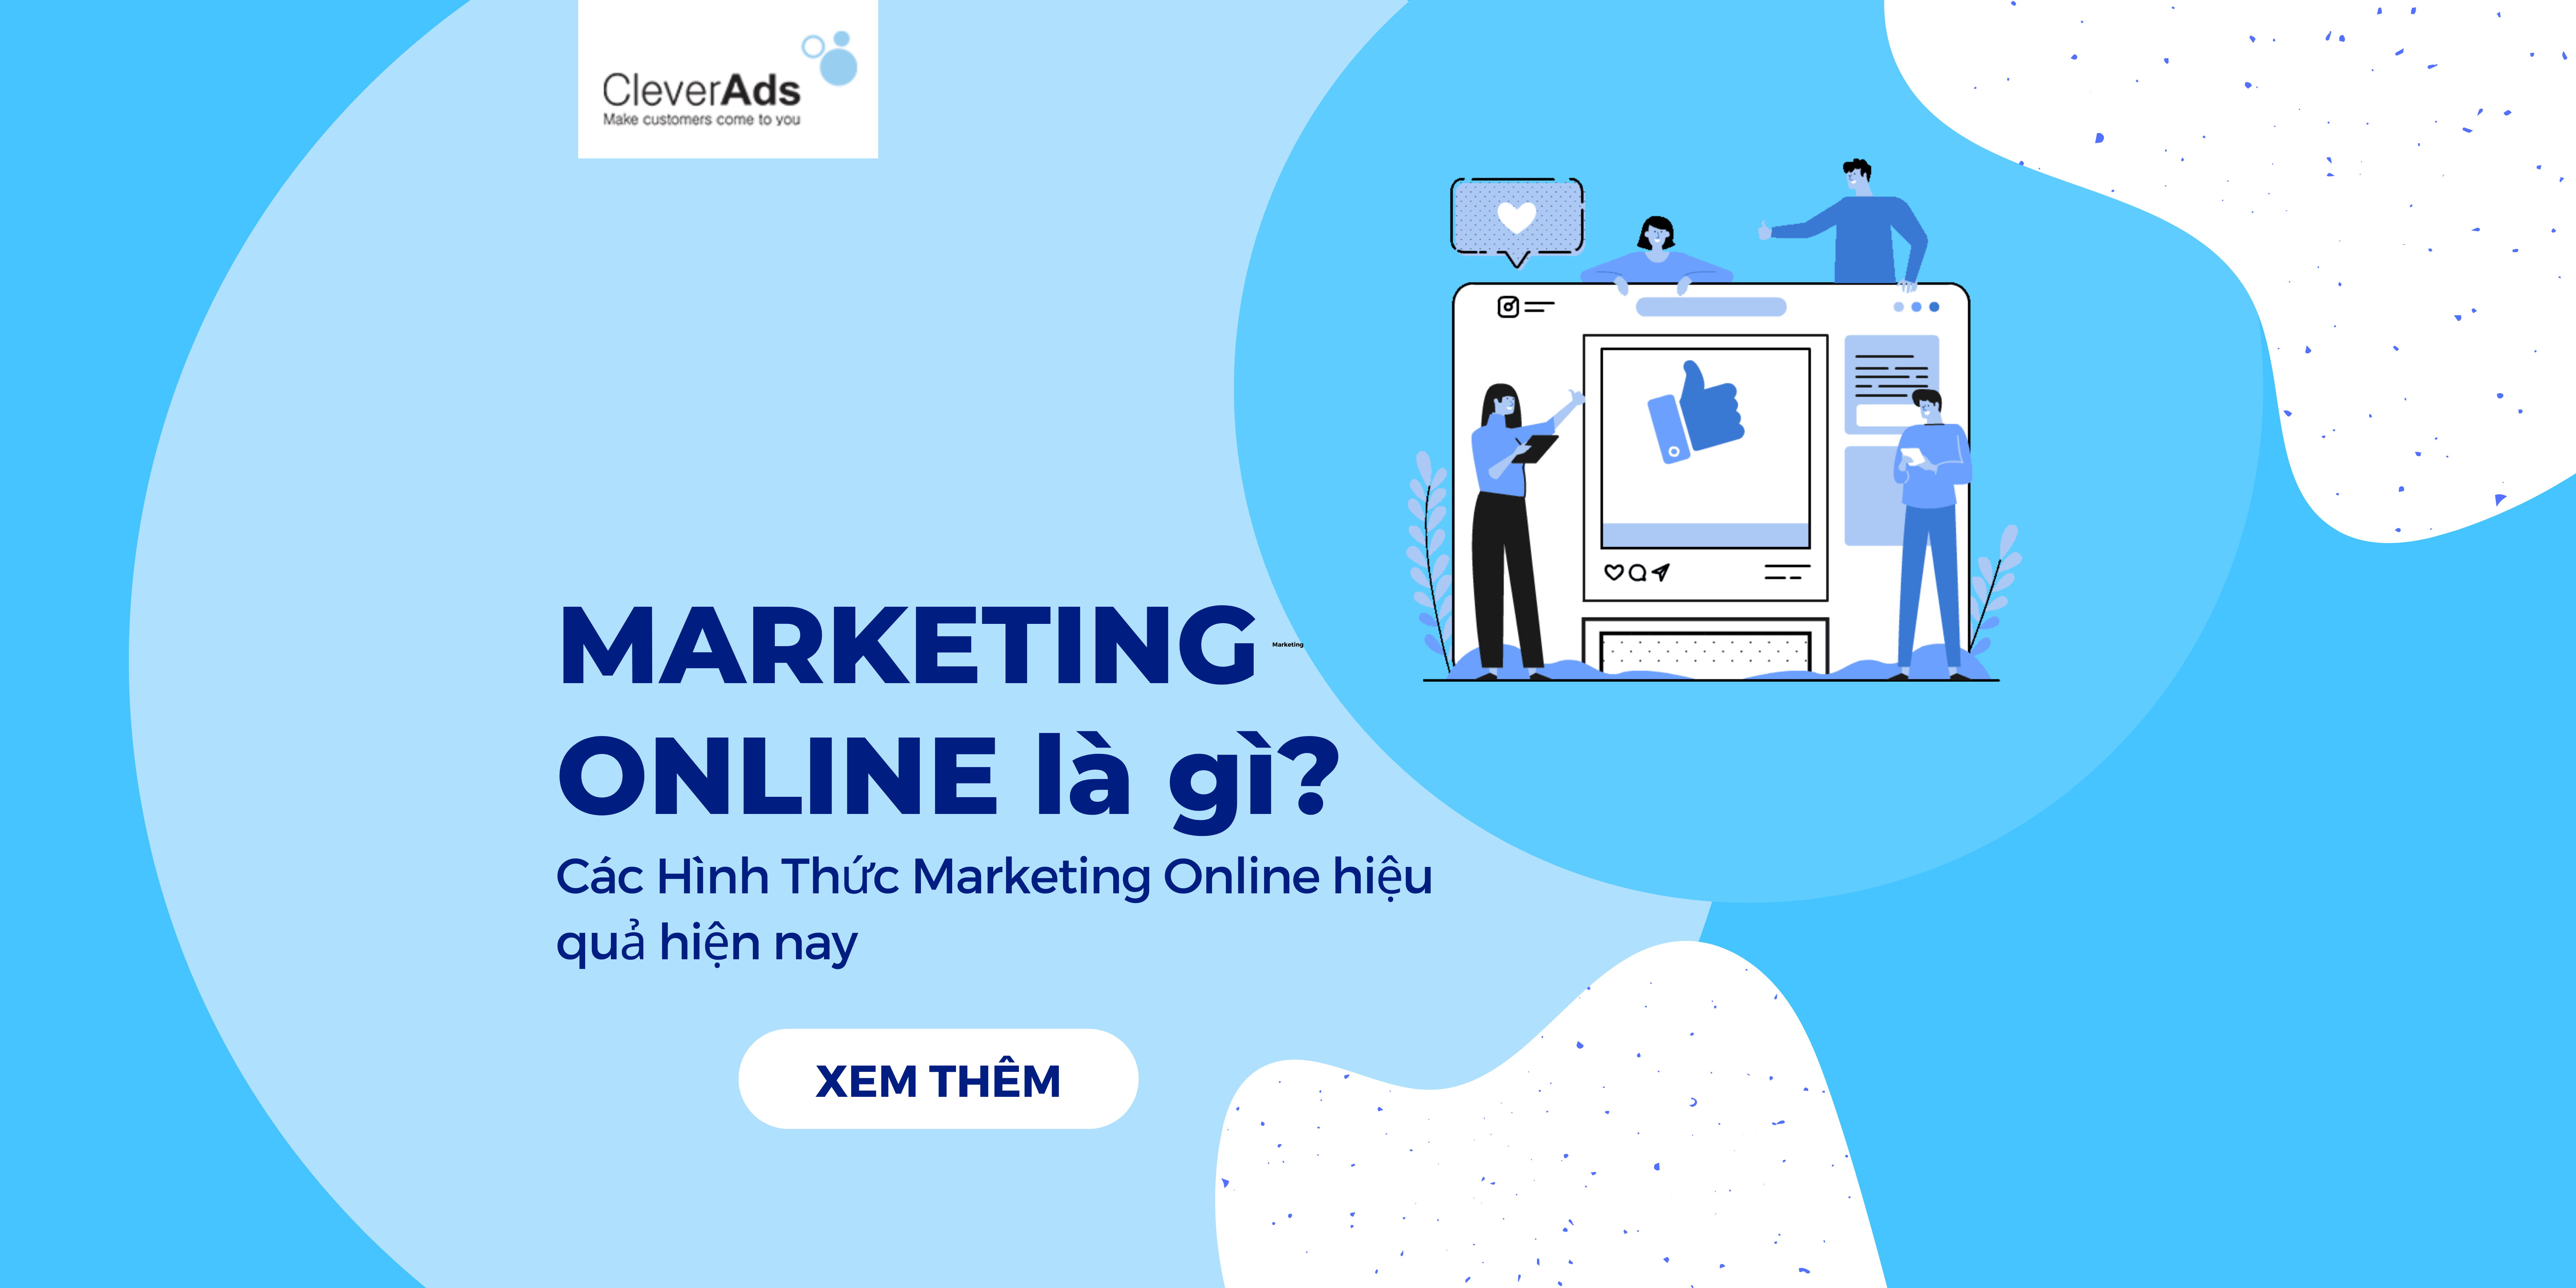 Marketing Online là gì? Hình thức Marketing Online hiện nay